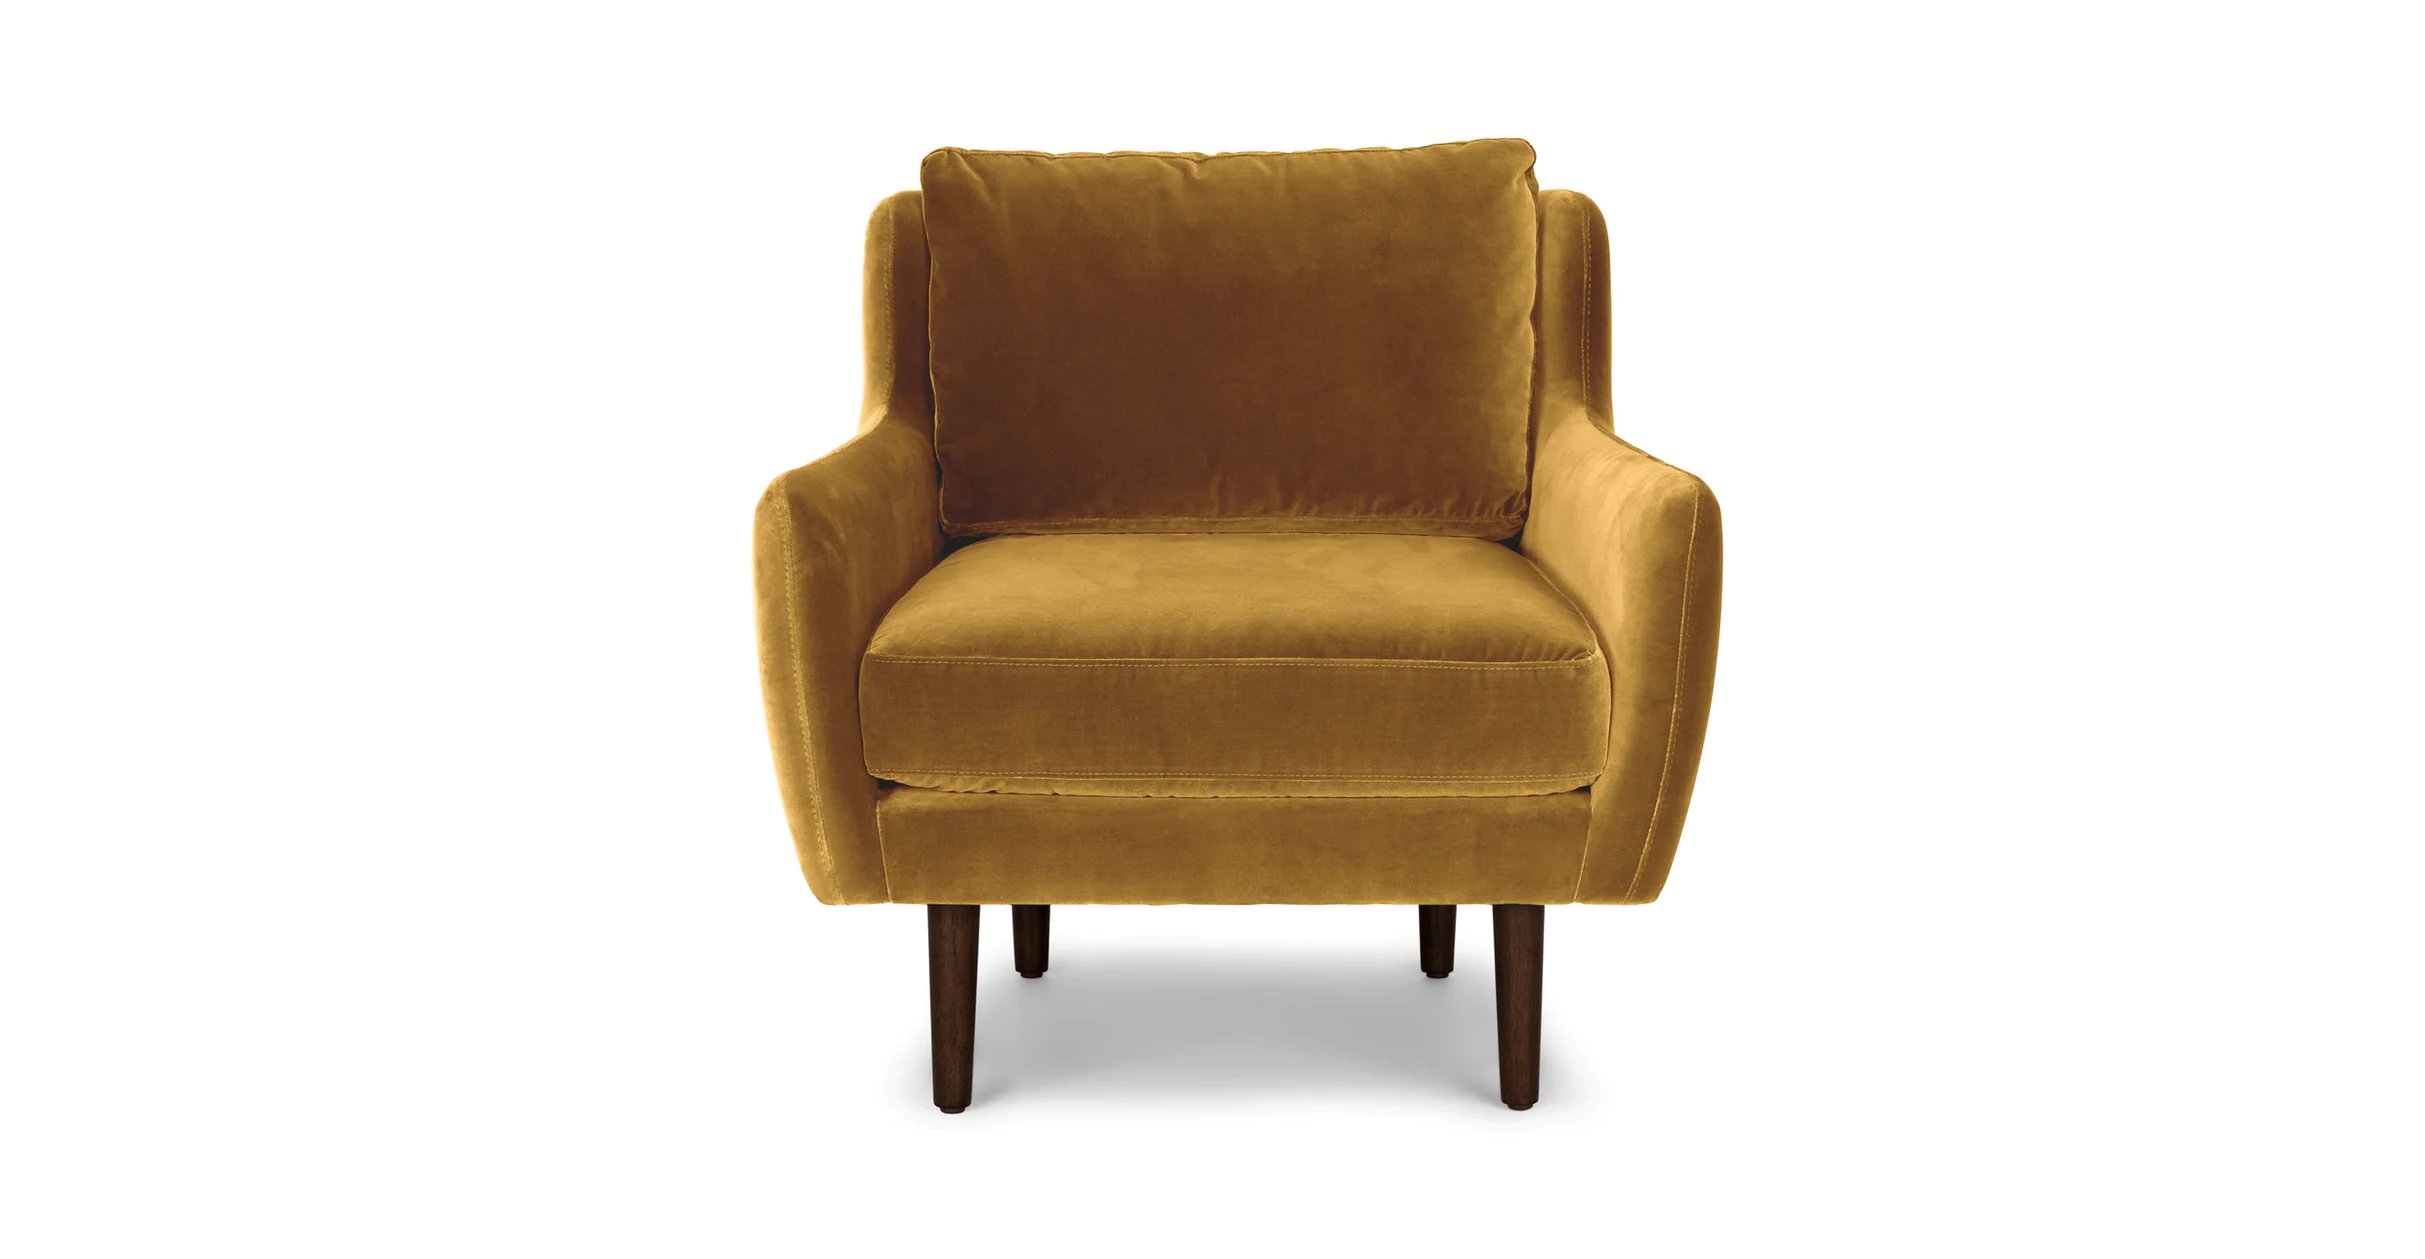 Matrix Lounge Chair - Yellow Gold and Walnut - Image 0